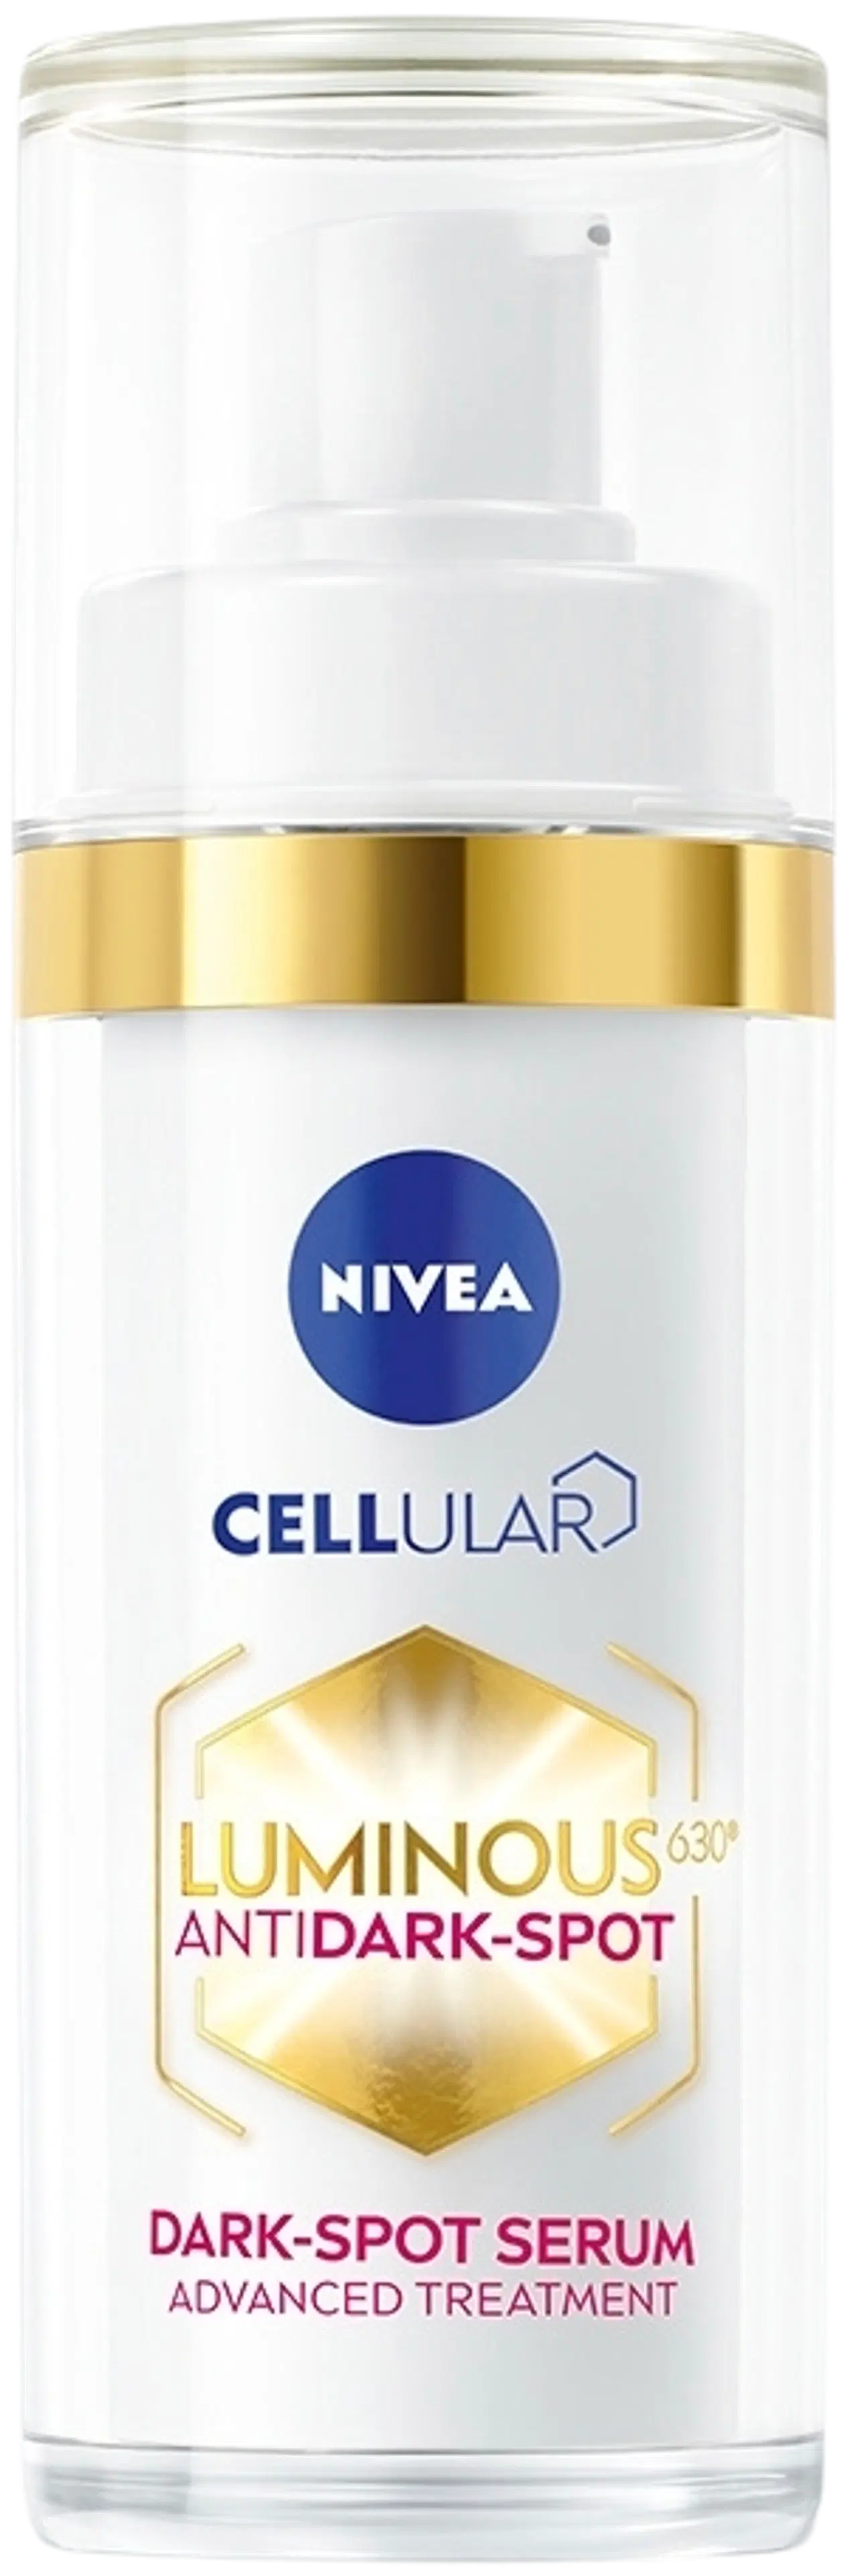 NIVEA 30ml Cellular Luminous630 Anti Dark-Spot Serum -kasvoseerumi